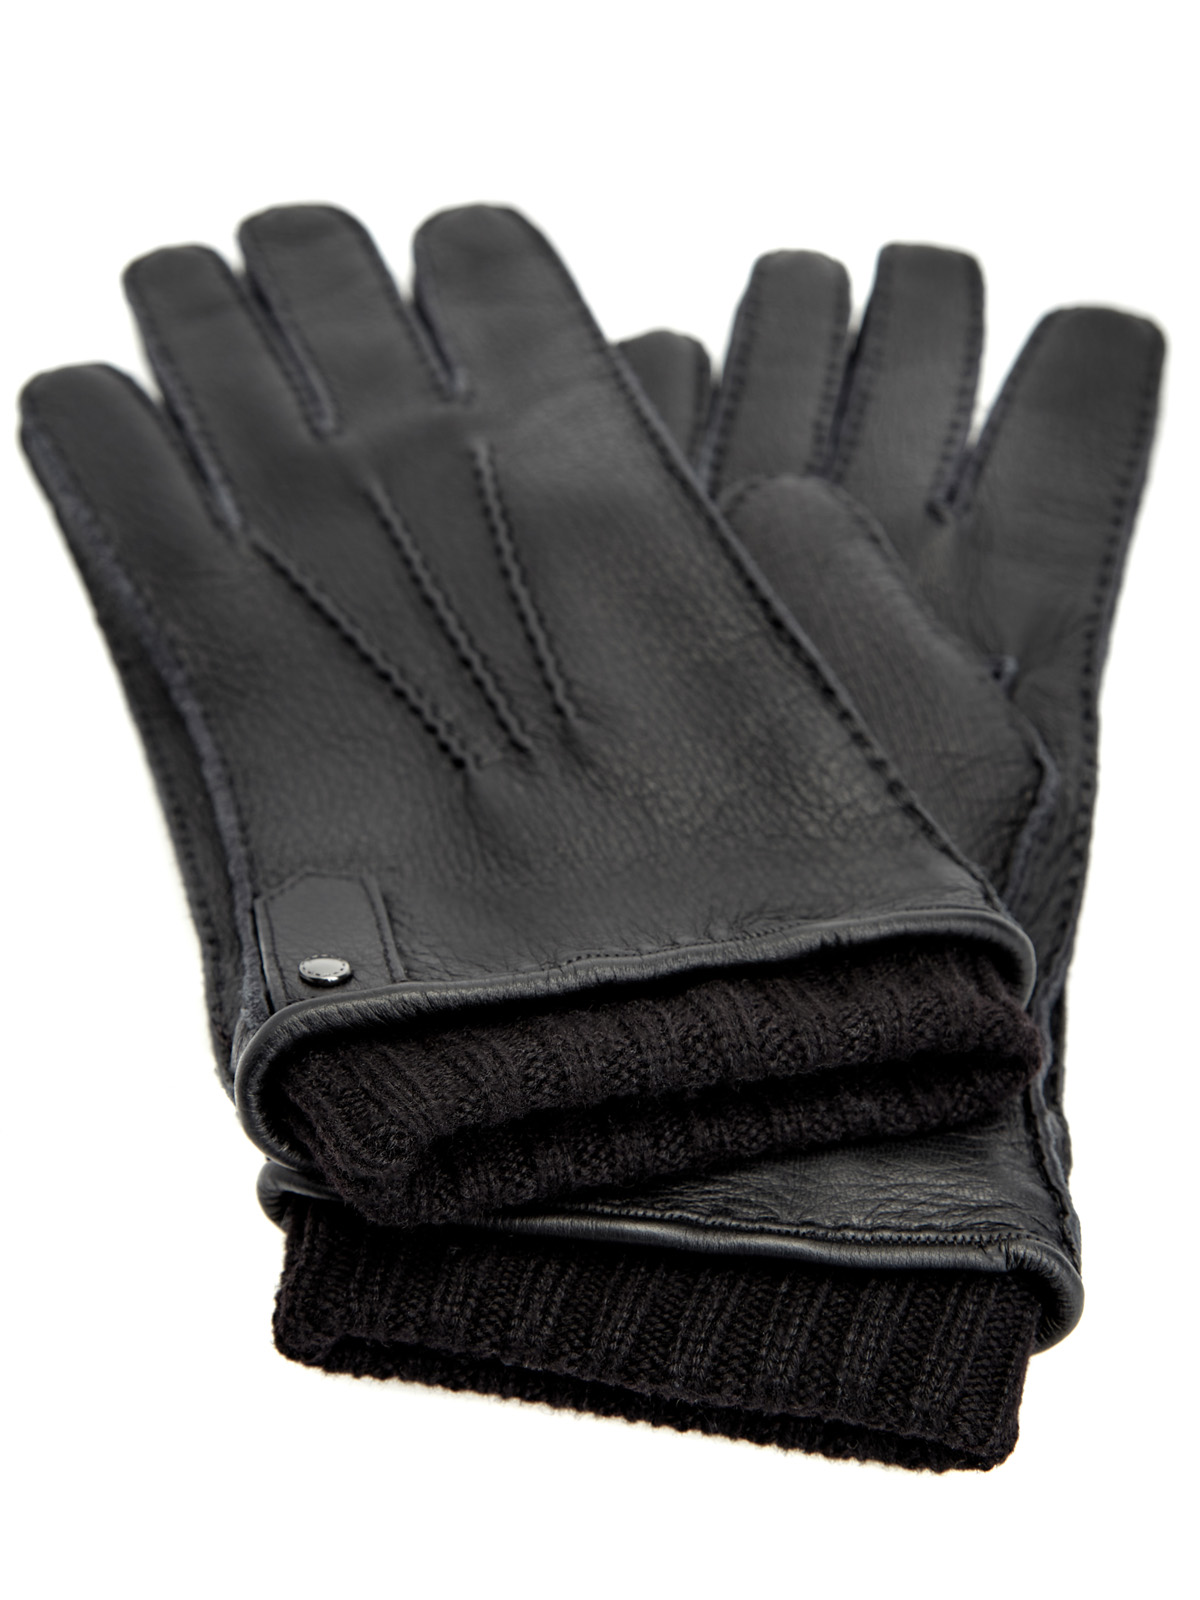 Перчатки из мягкой крупнозернистой кожи и кашемира CANALI, цвет черный, размер M;L - фото 2